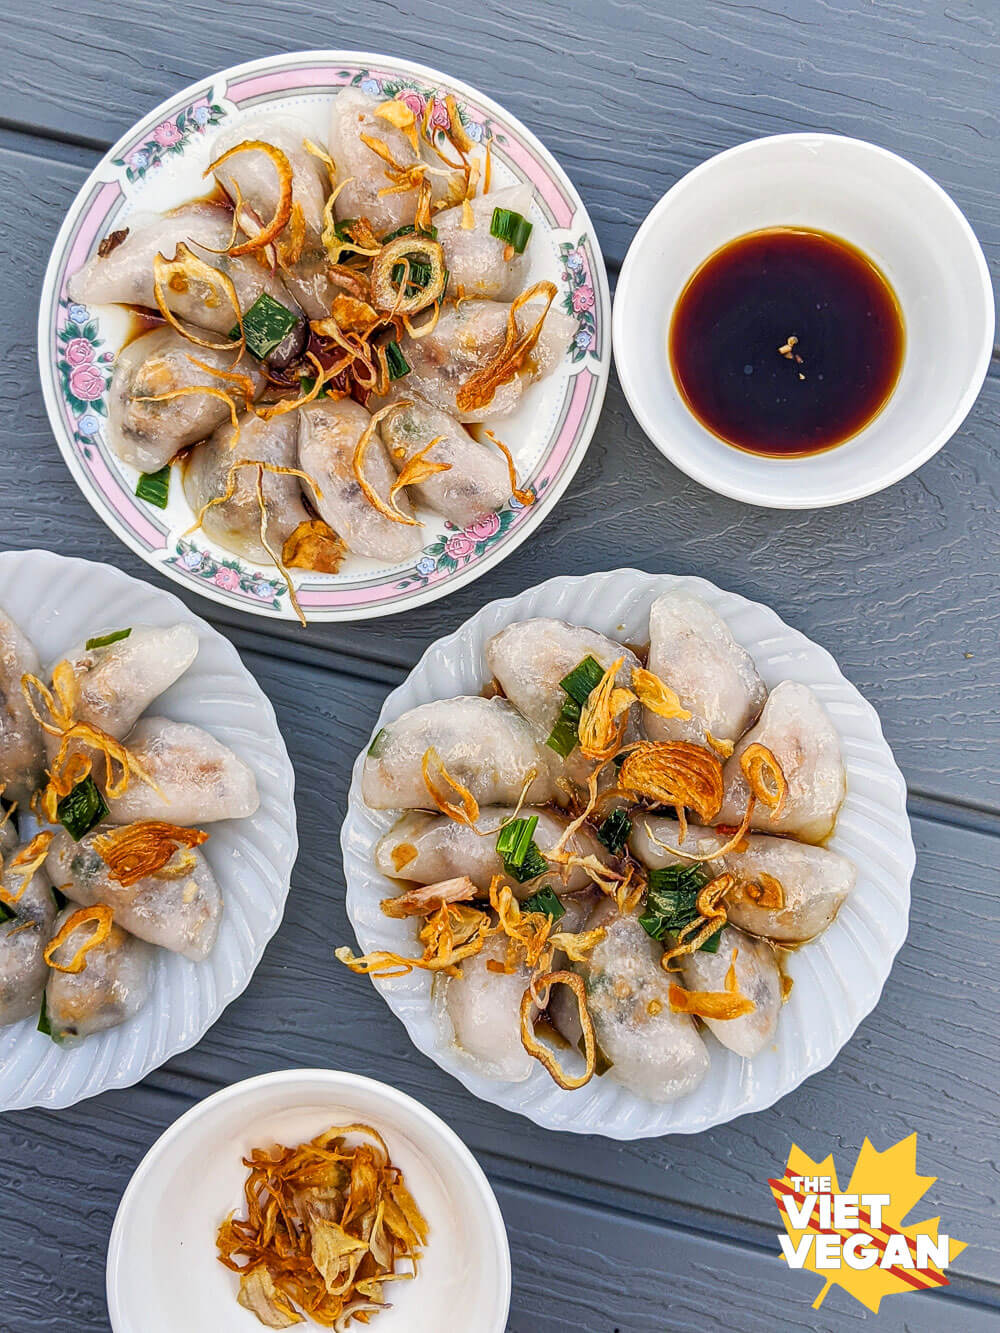 Bánh Bột Lọc Tran Chay - Vegan Vietnamese Clear Dumplings - The